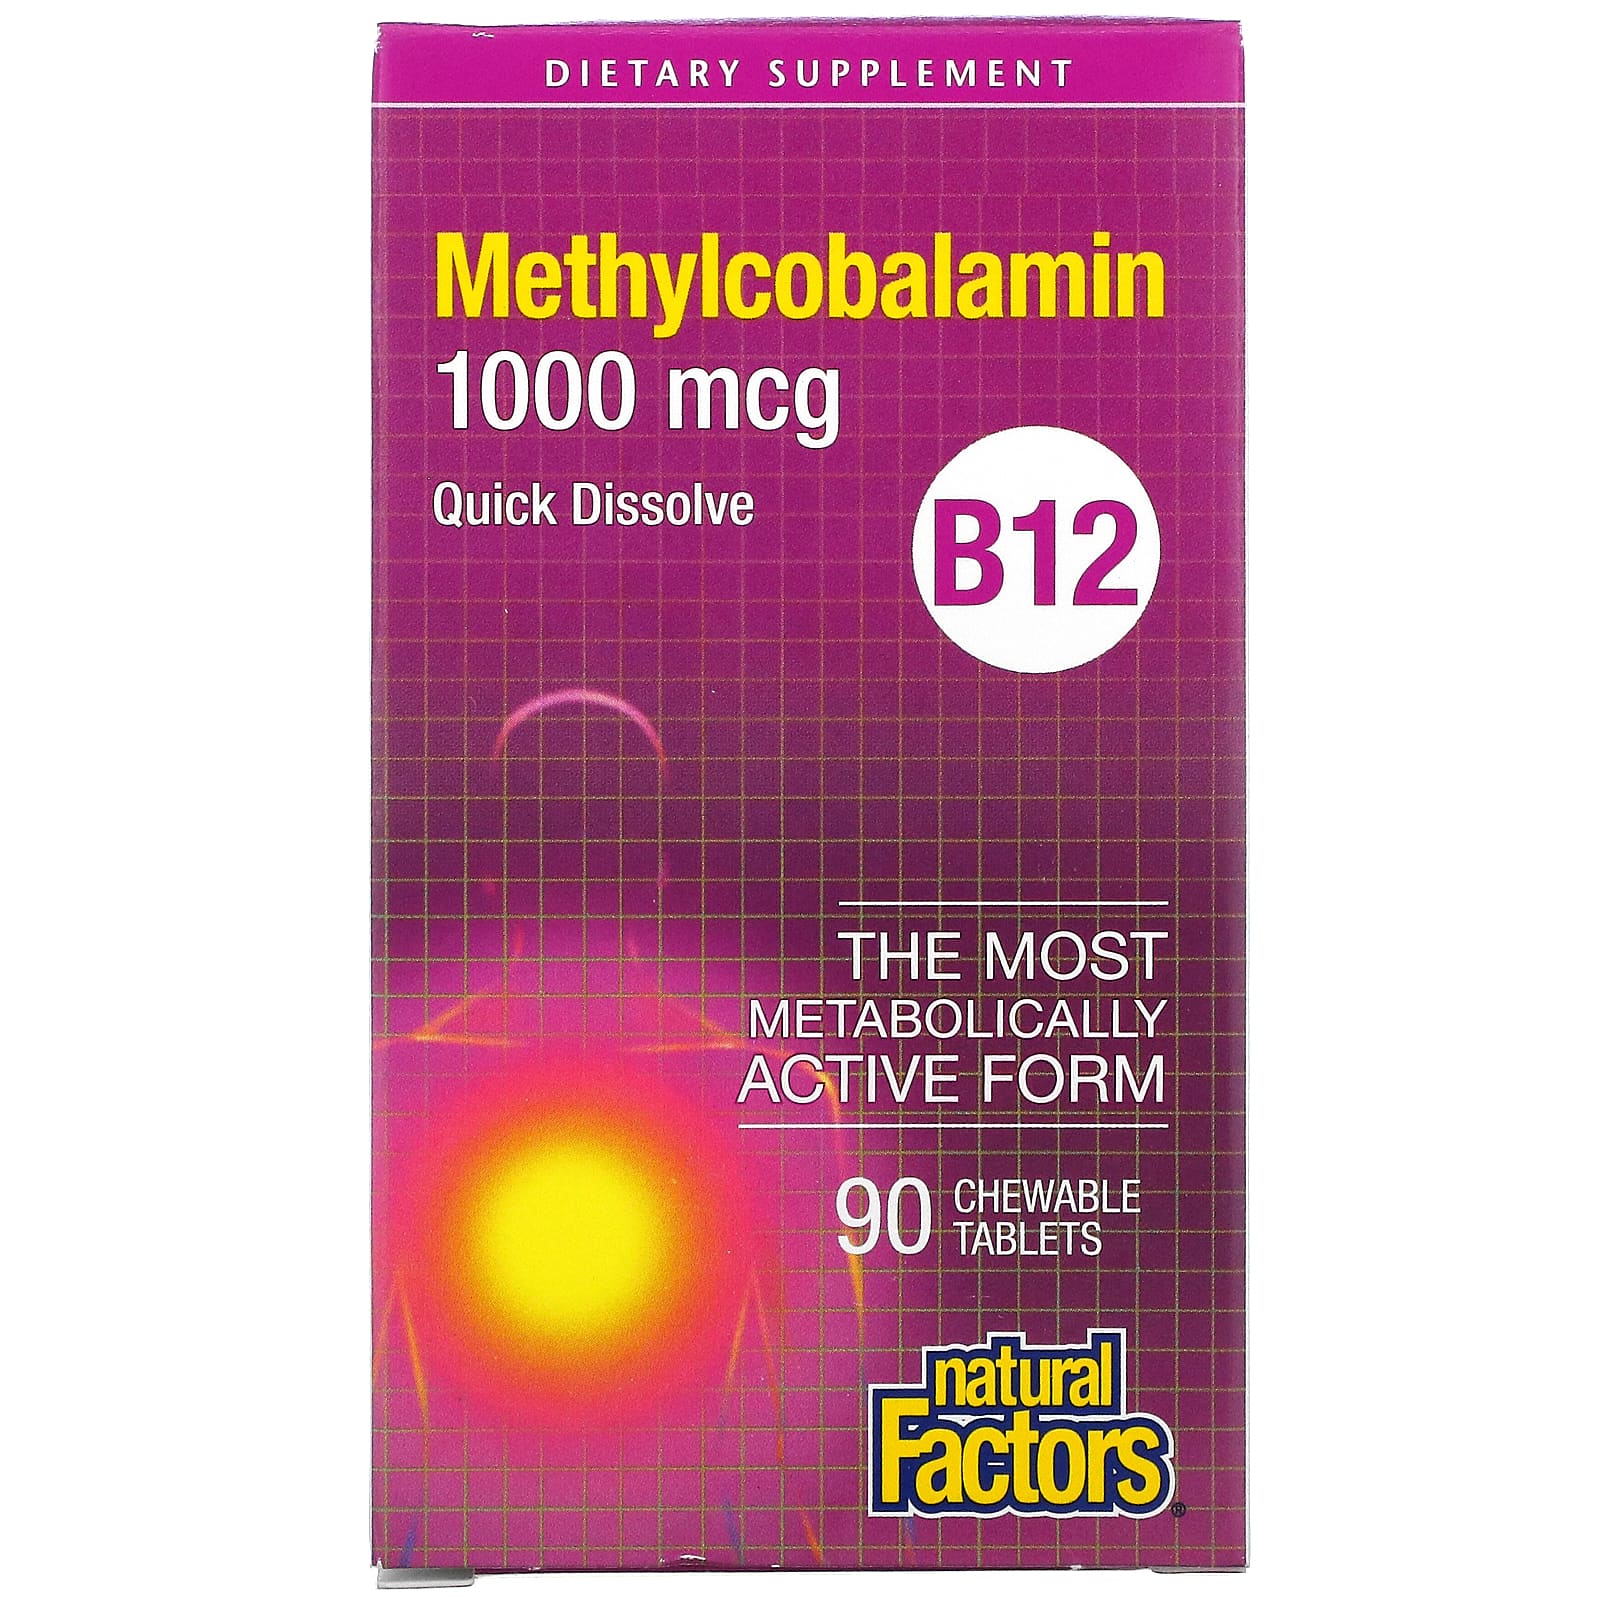 Natural Factors Vitamin B12 1000 Mcg (methylcobalamin) Chewable